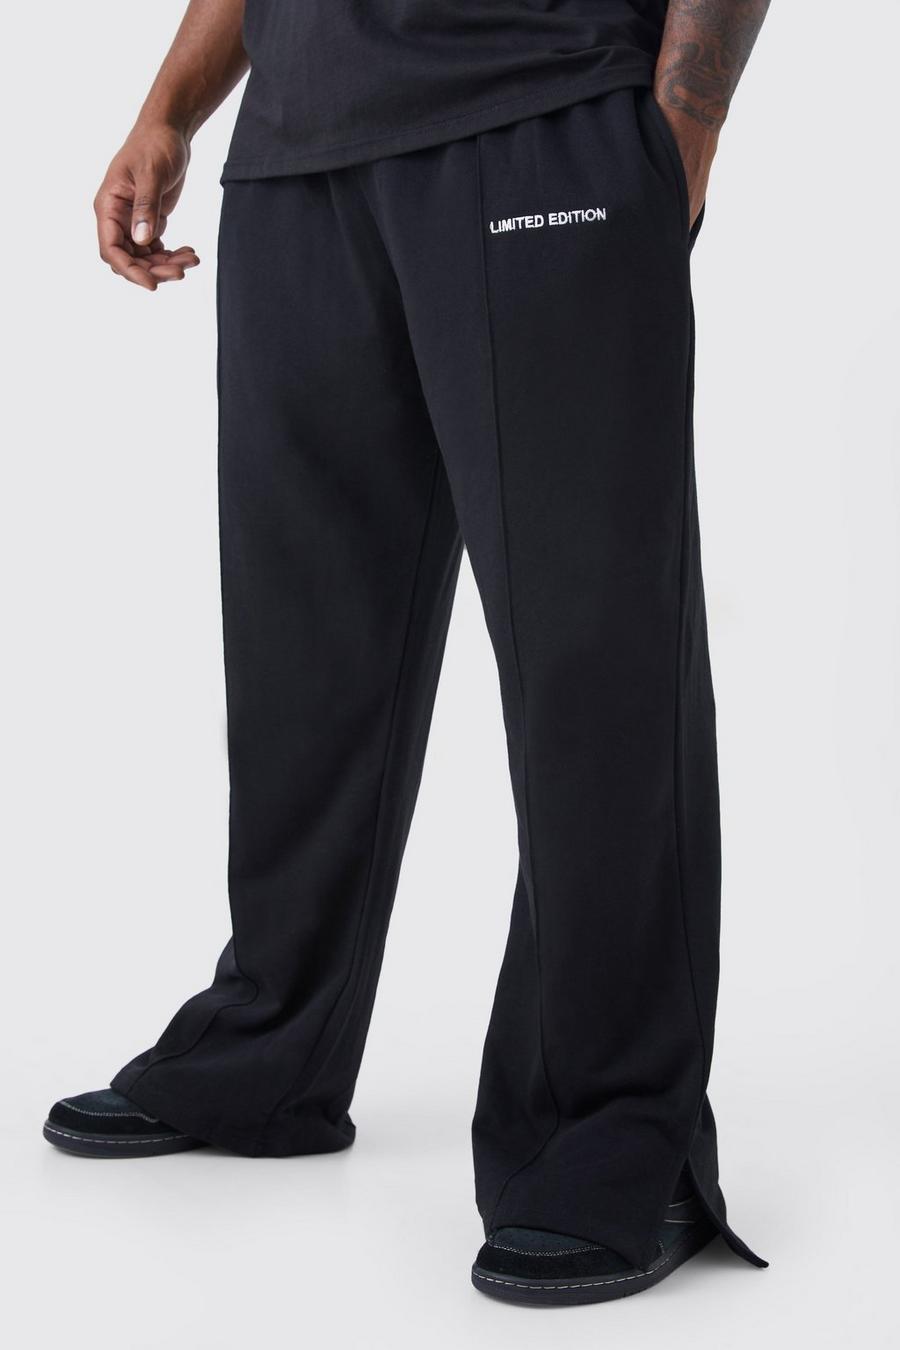 Pantalón deportivo Plus holgado grueso con abertura en el bajo, Black nero